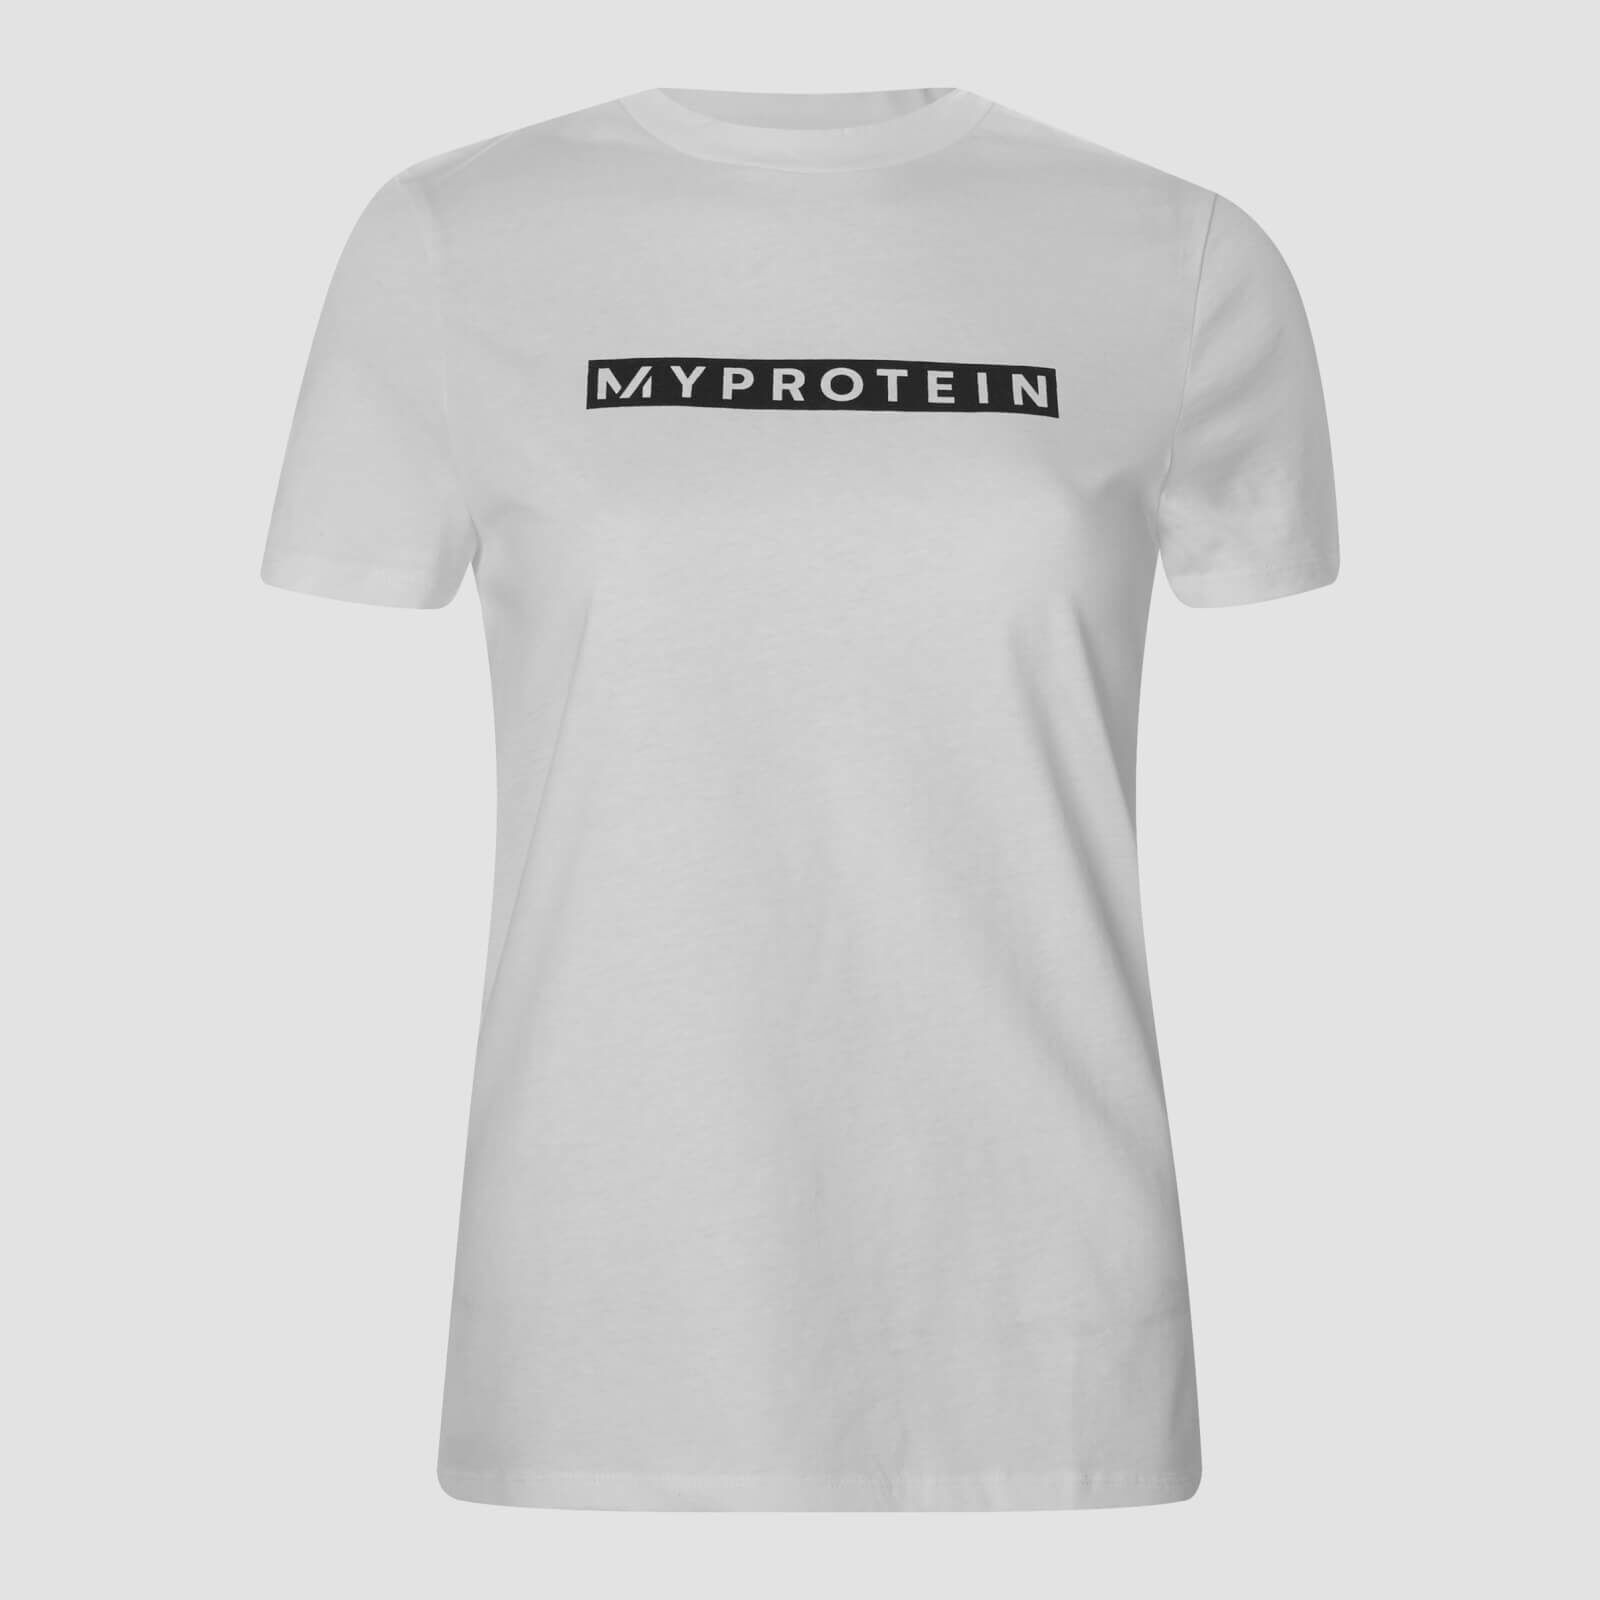 Myprotein T-shirt Originals da donna - Bianco - M